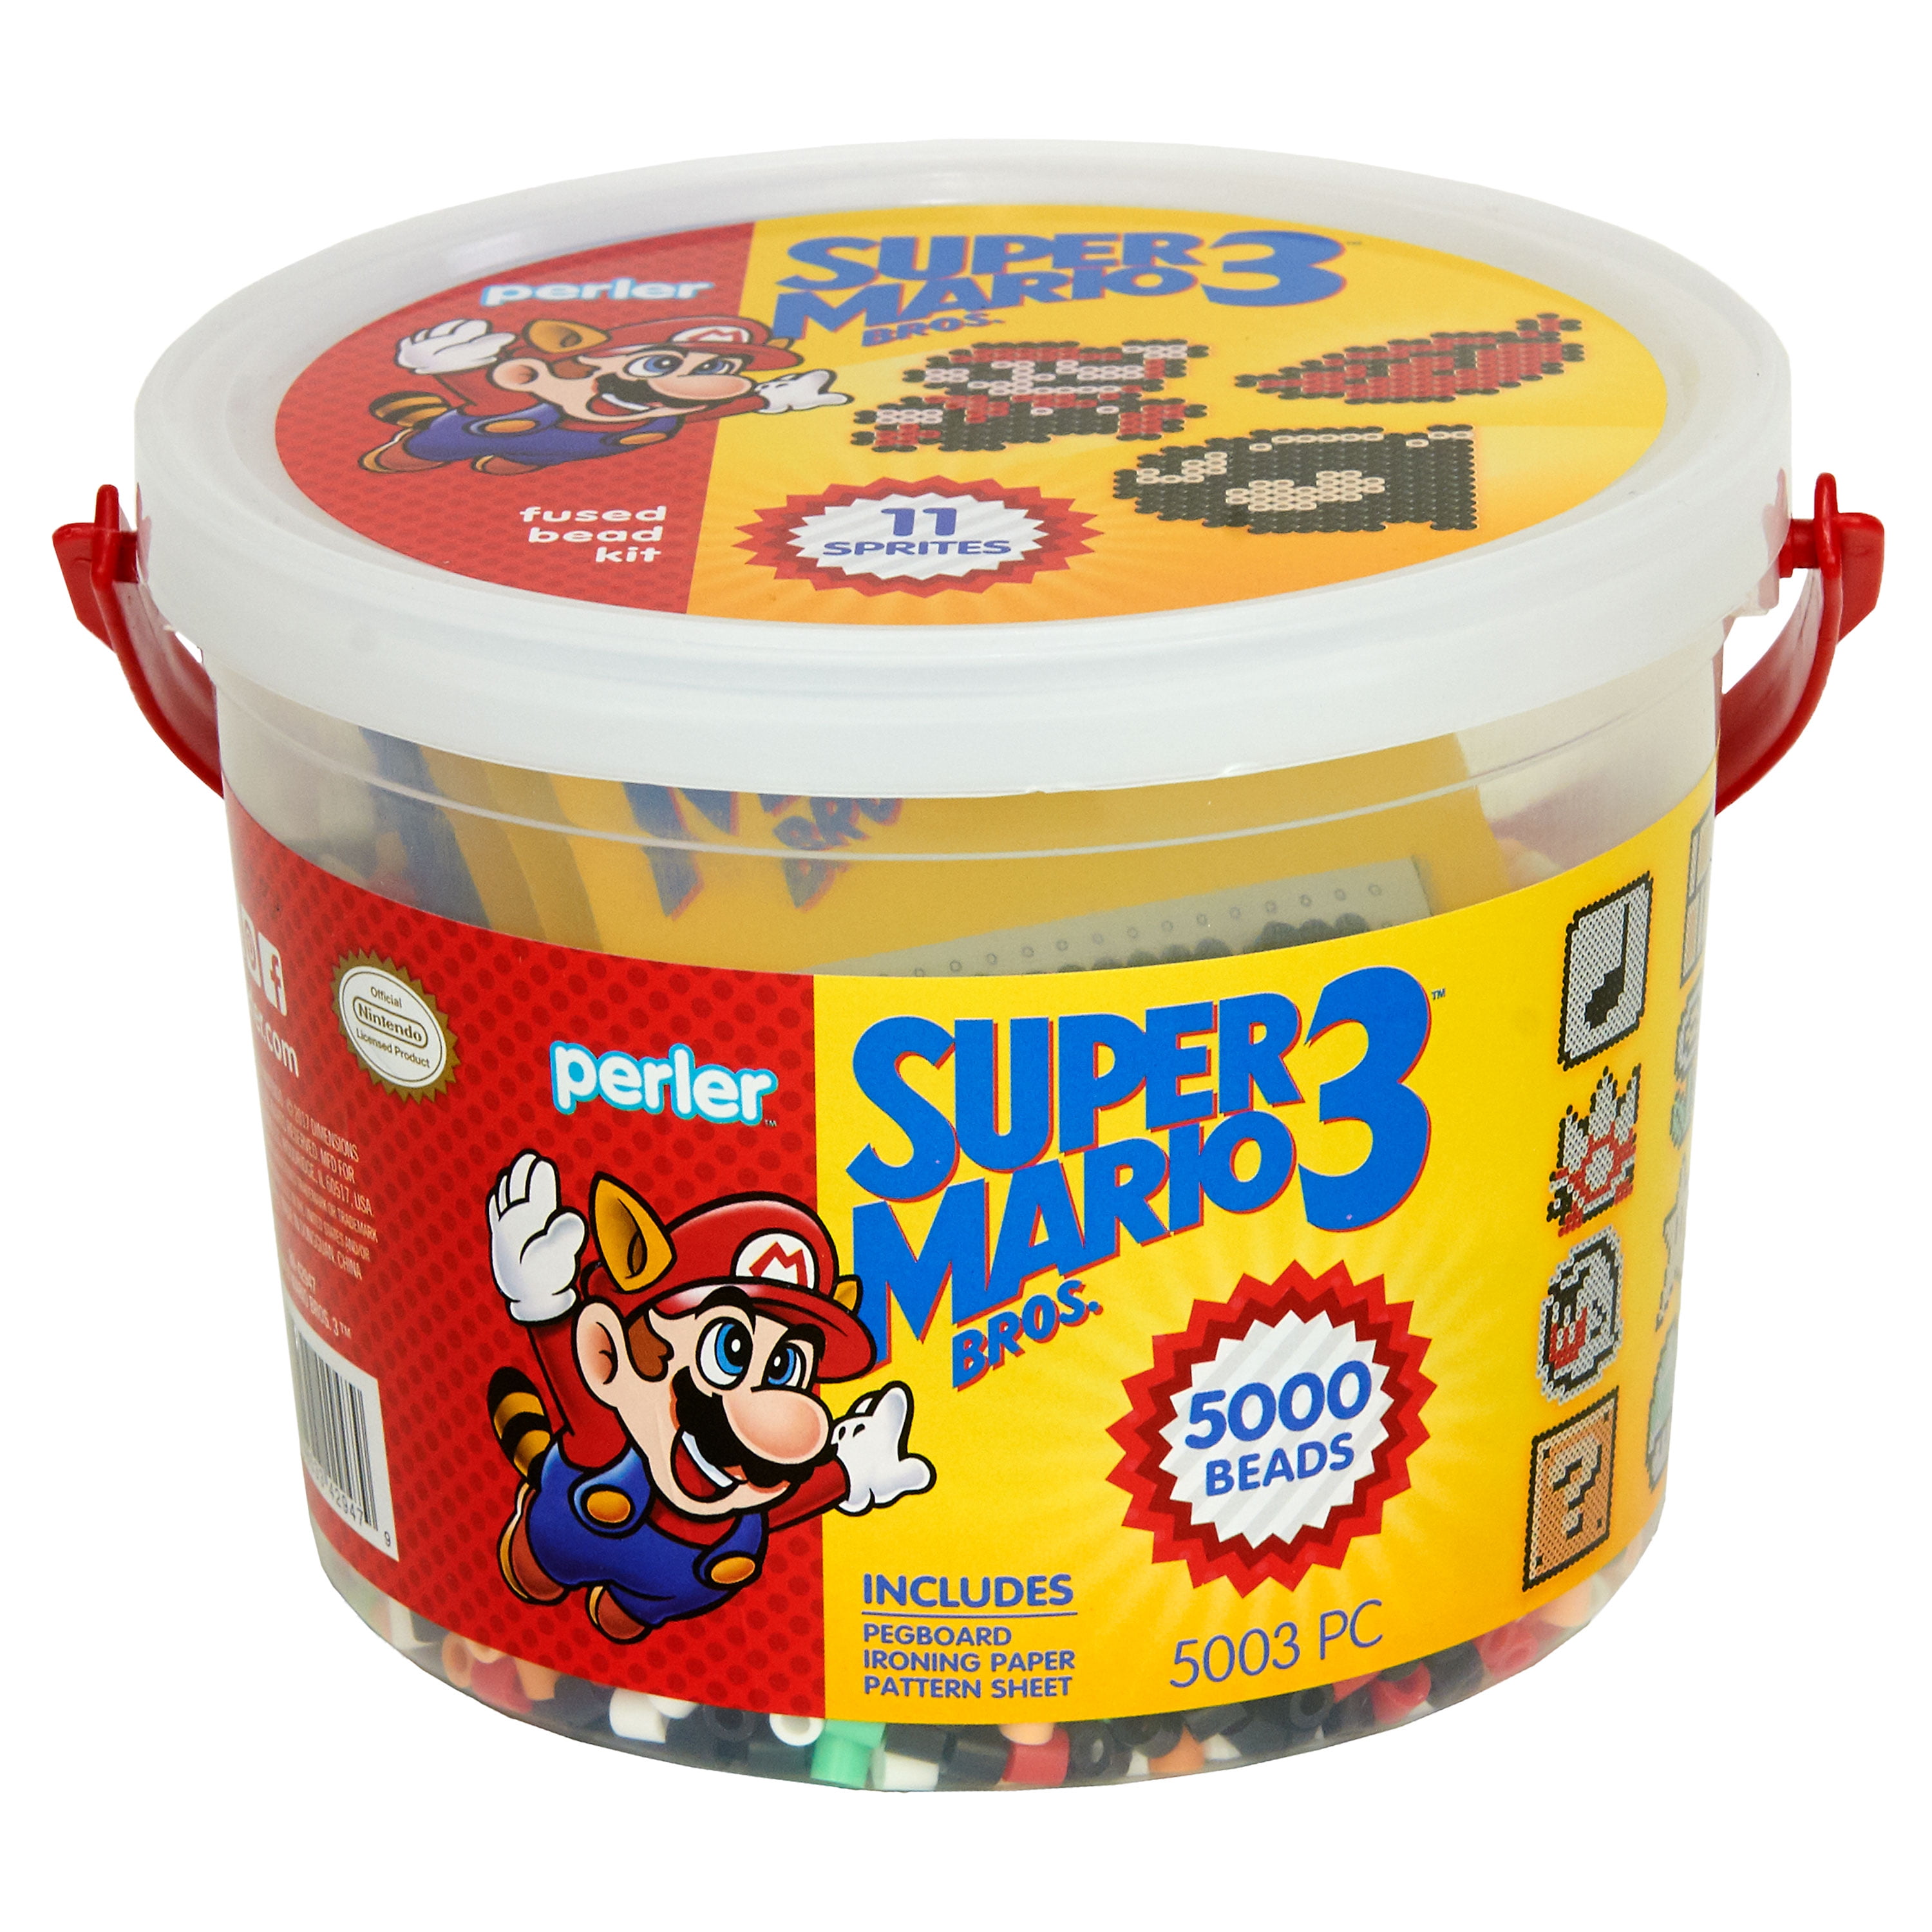 Featured image of post Perler Super Mario Bros 3 File name super mario bros